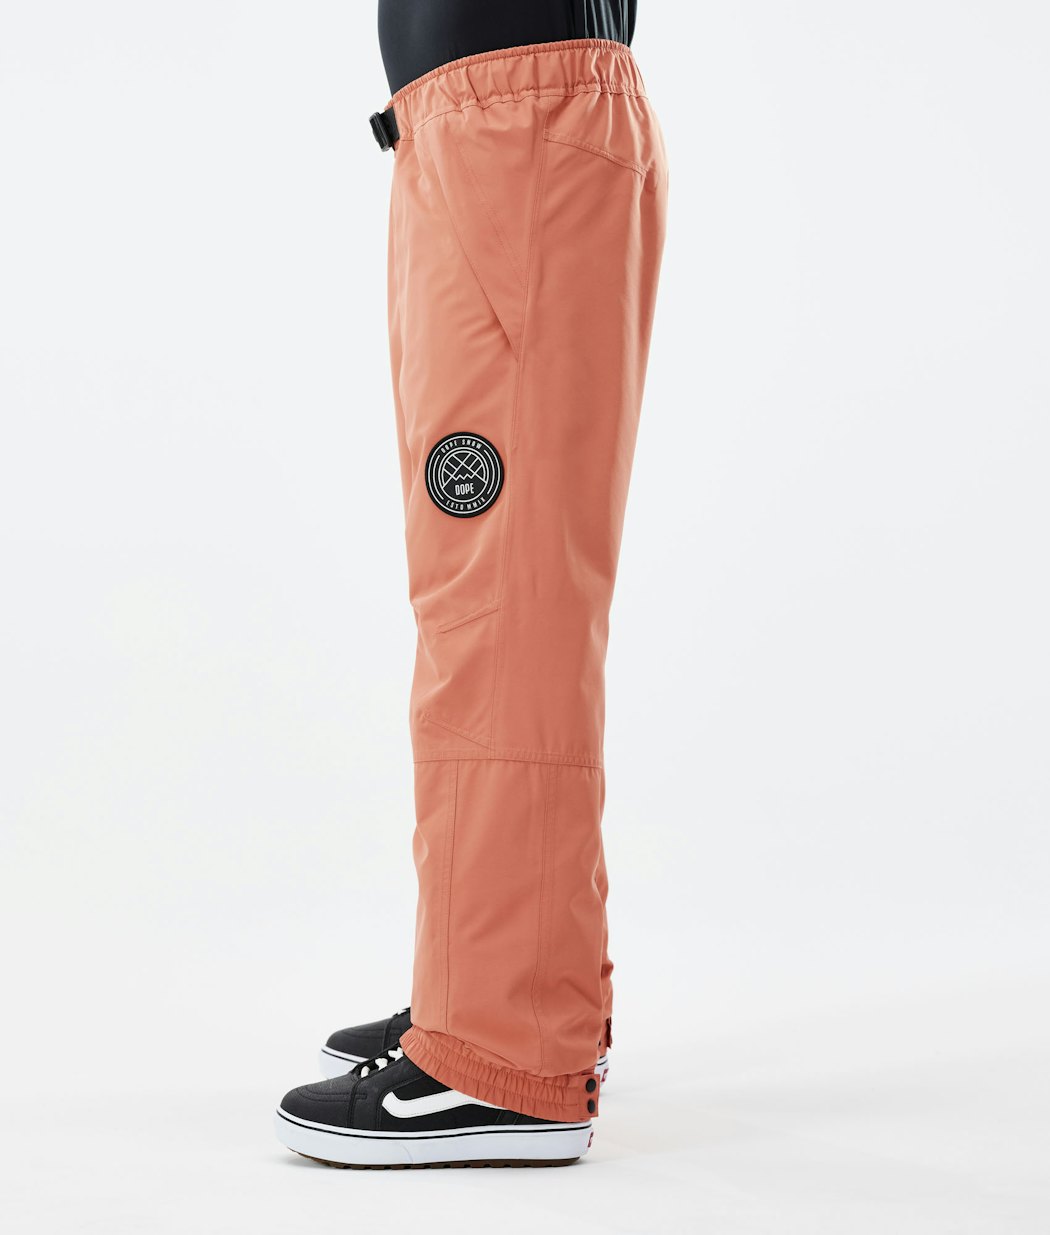 Blizzard 2021 Pantalon de Snowboard Homme Peach